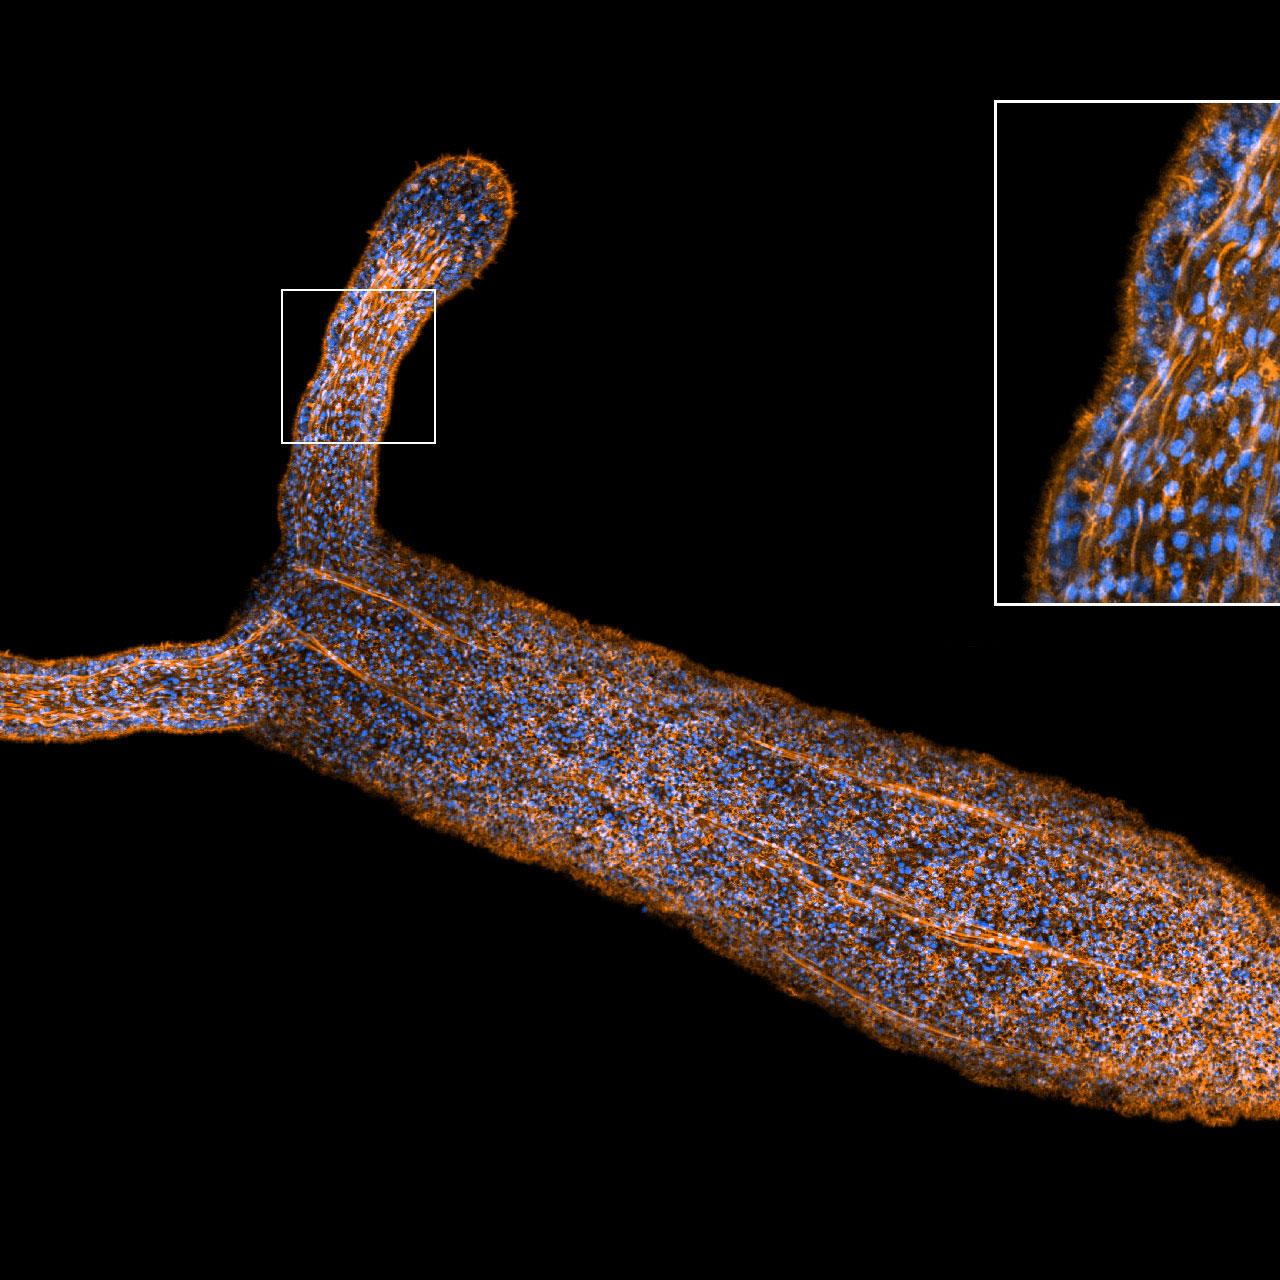 Anémona de mar estrella (Nematostella vectensis) captada con el modo de alta sensibilidad de Airyscan 2.